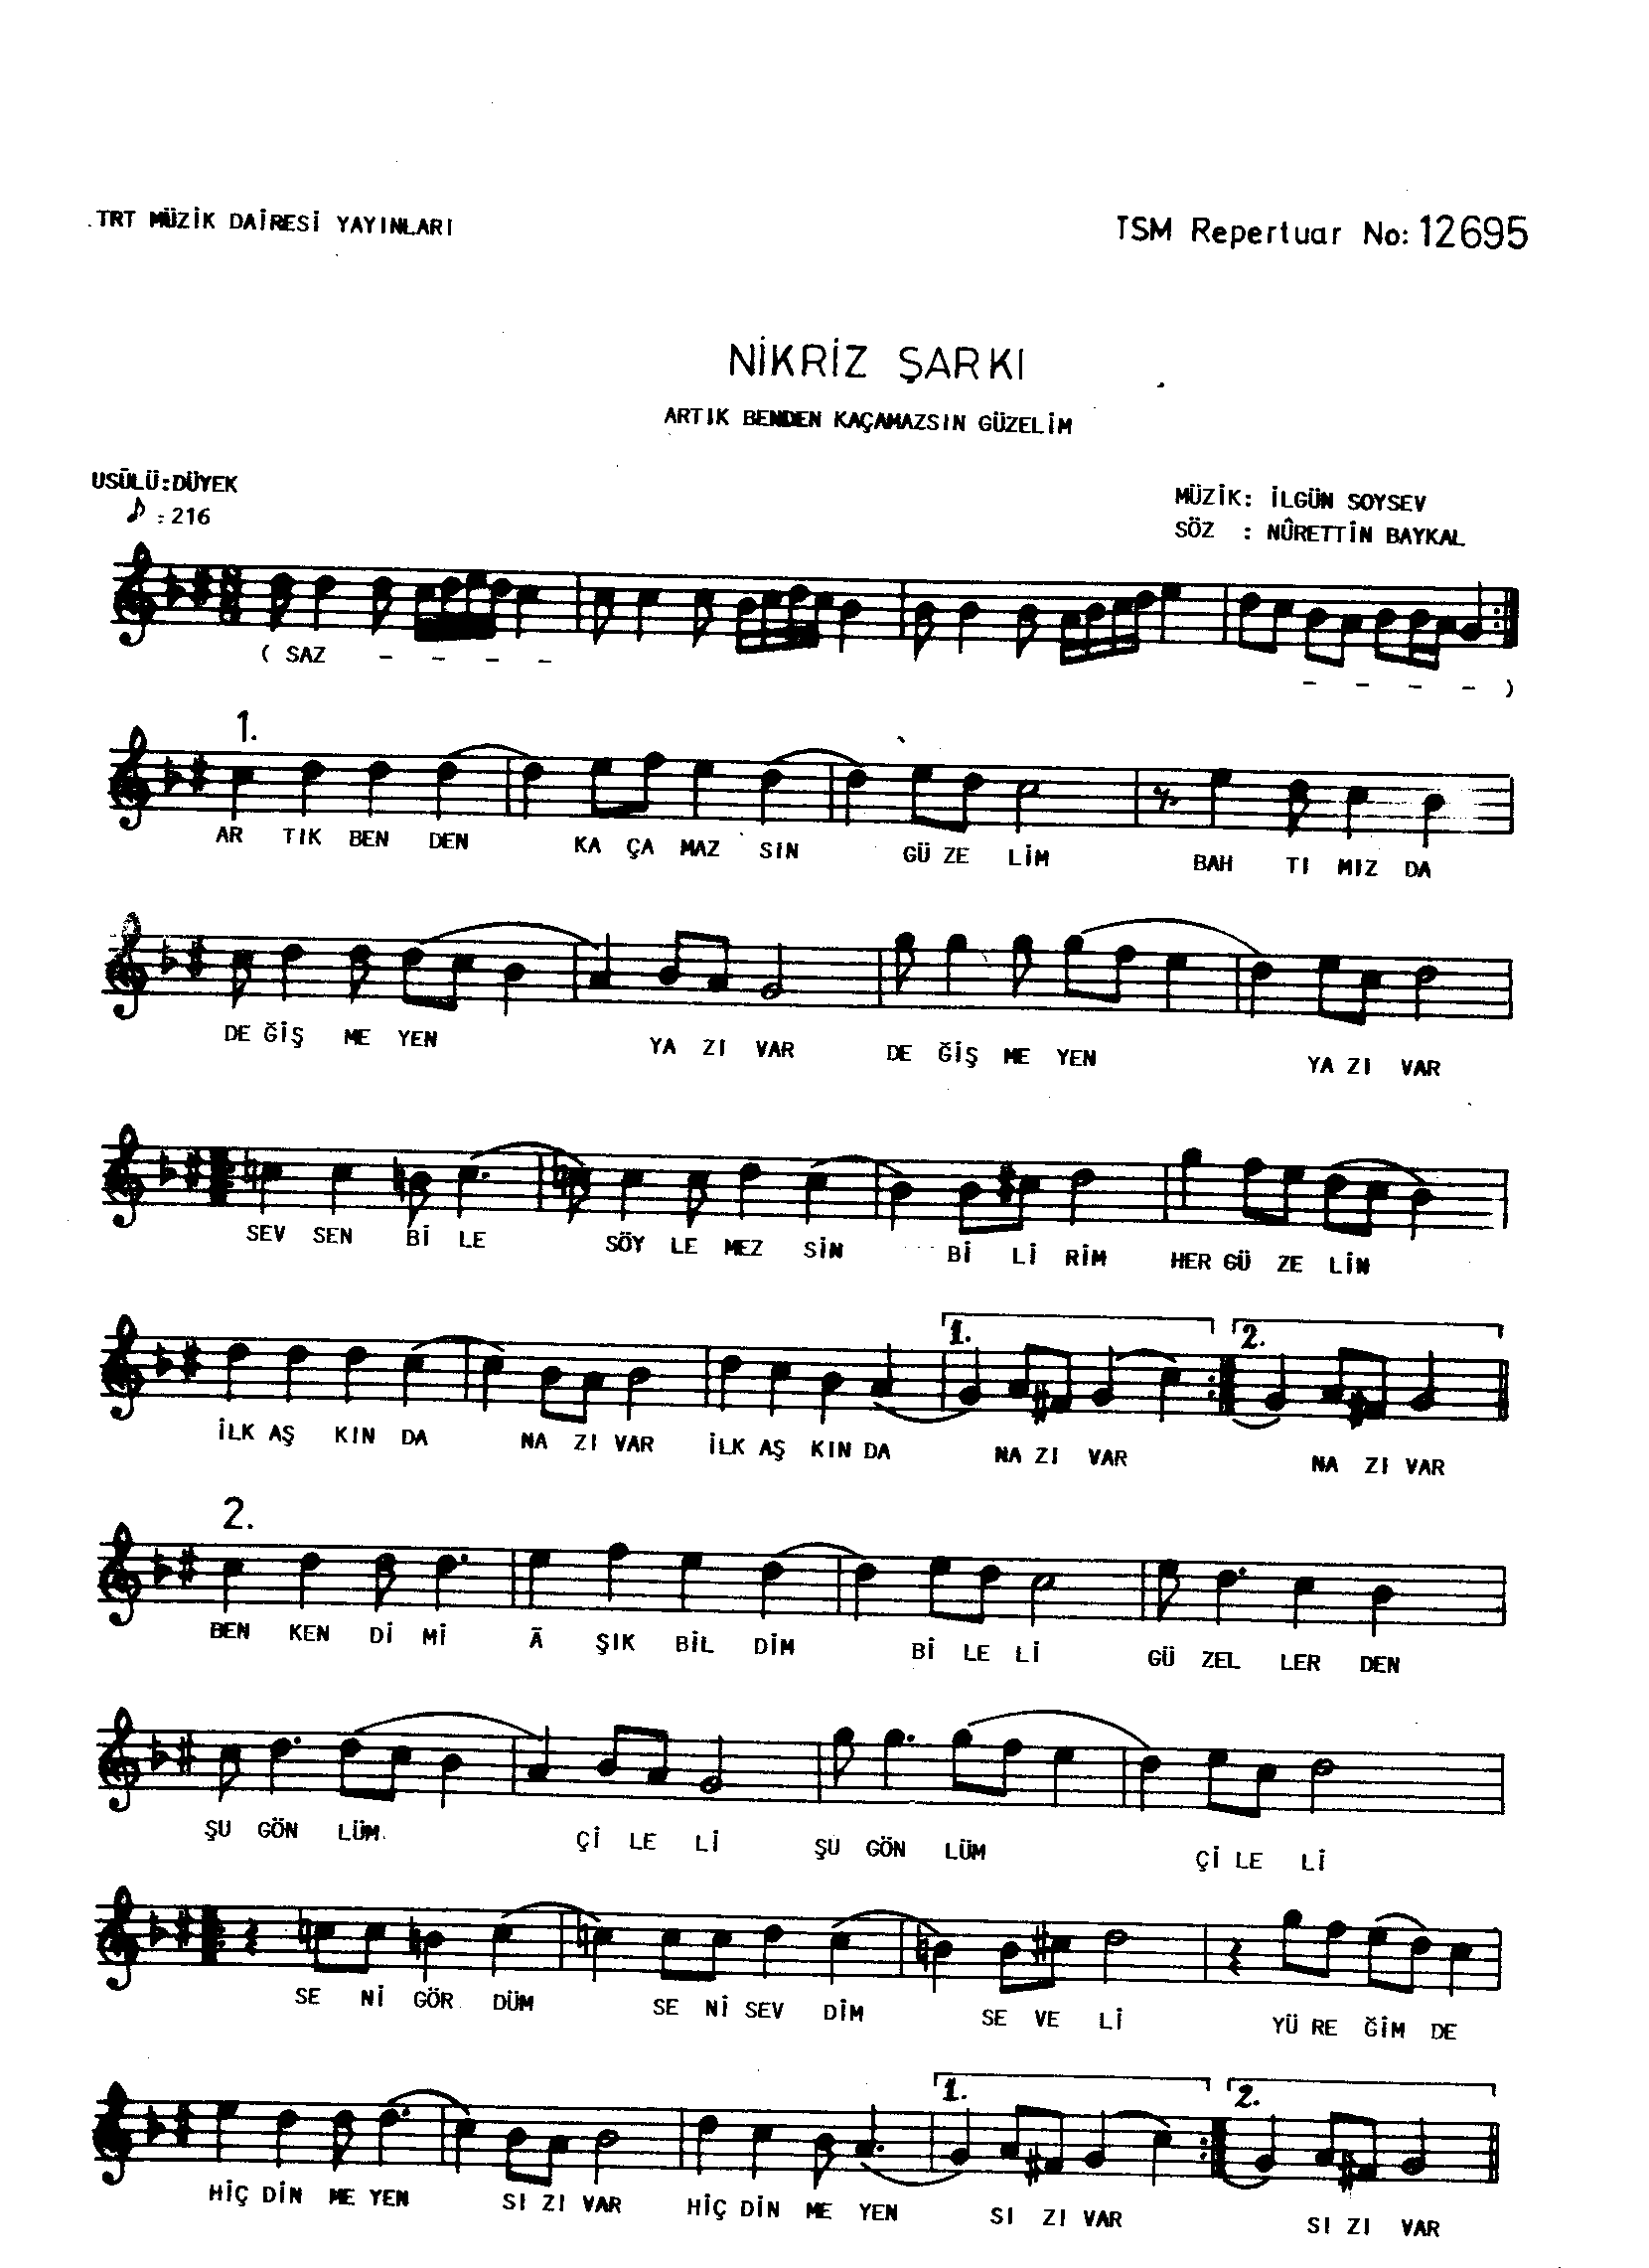 Nikrîz - Şarkı - İlgün Soysev - Sayfa 1